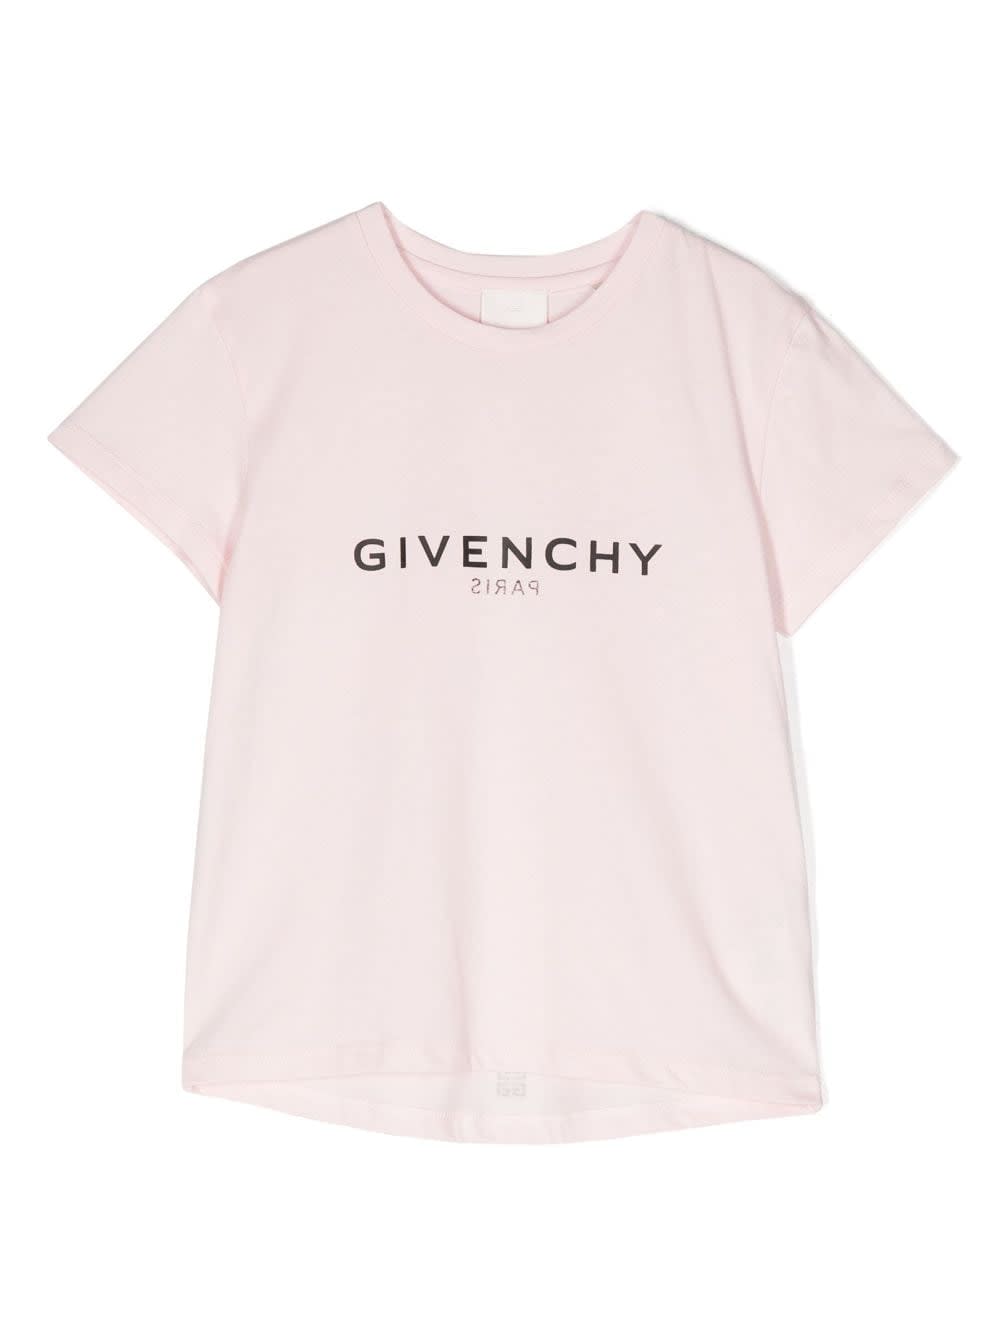 Givenchy T-shirt Rosa In Jersey Di Cotone Bambina